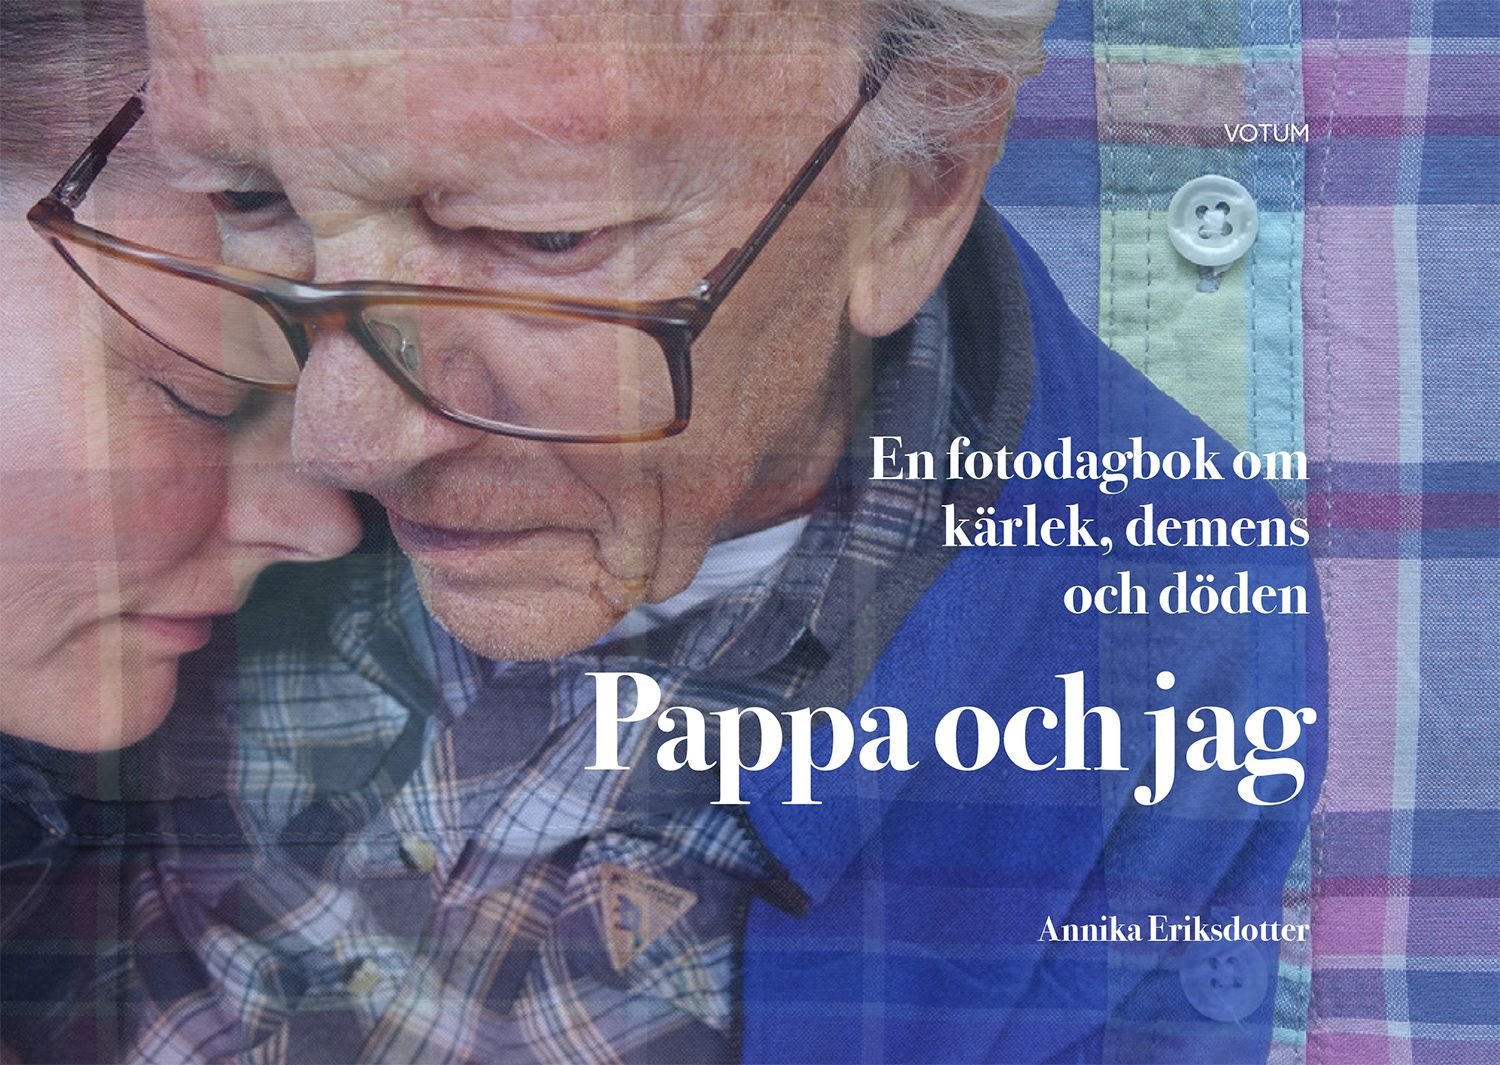 Pappa och jag: en fotodagbok om kärlek, demens och döden, e-bog af Annika Eriksdotter